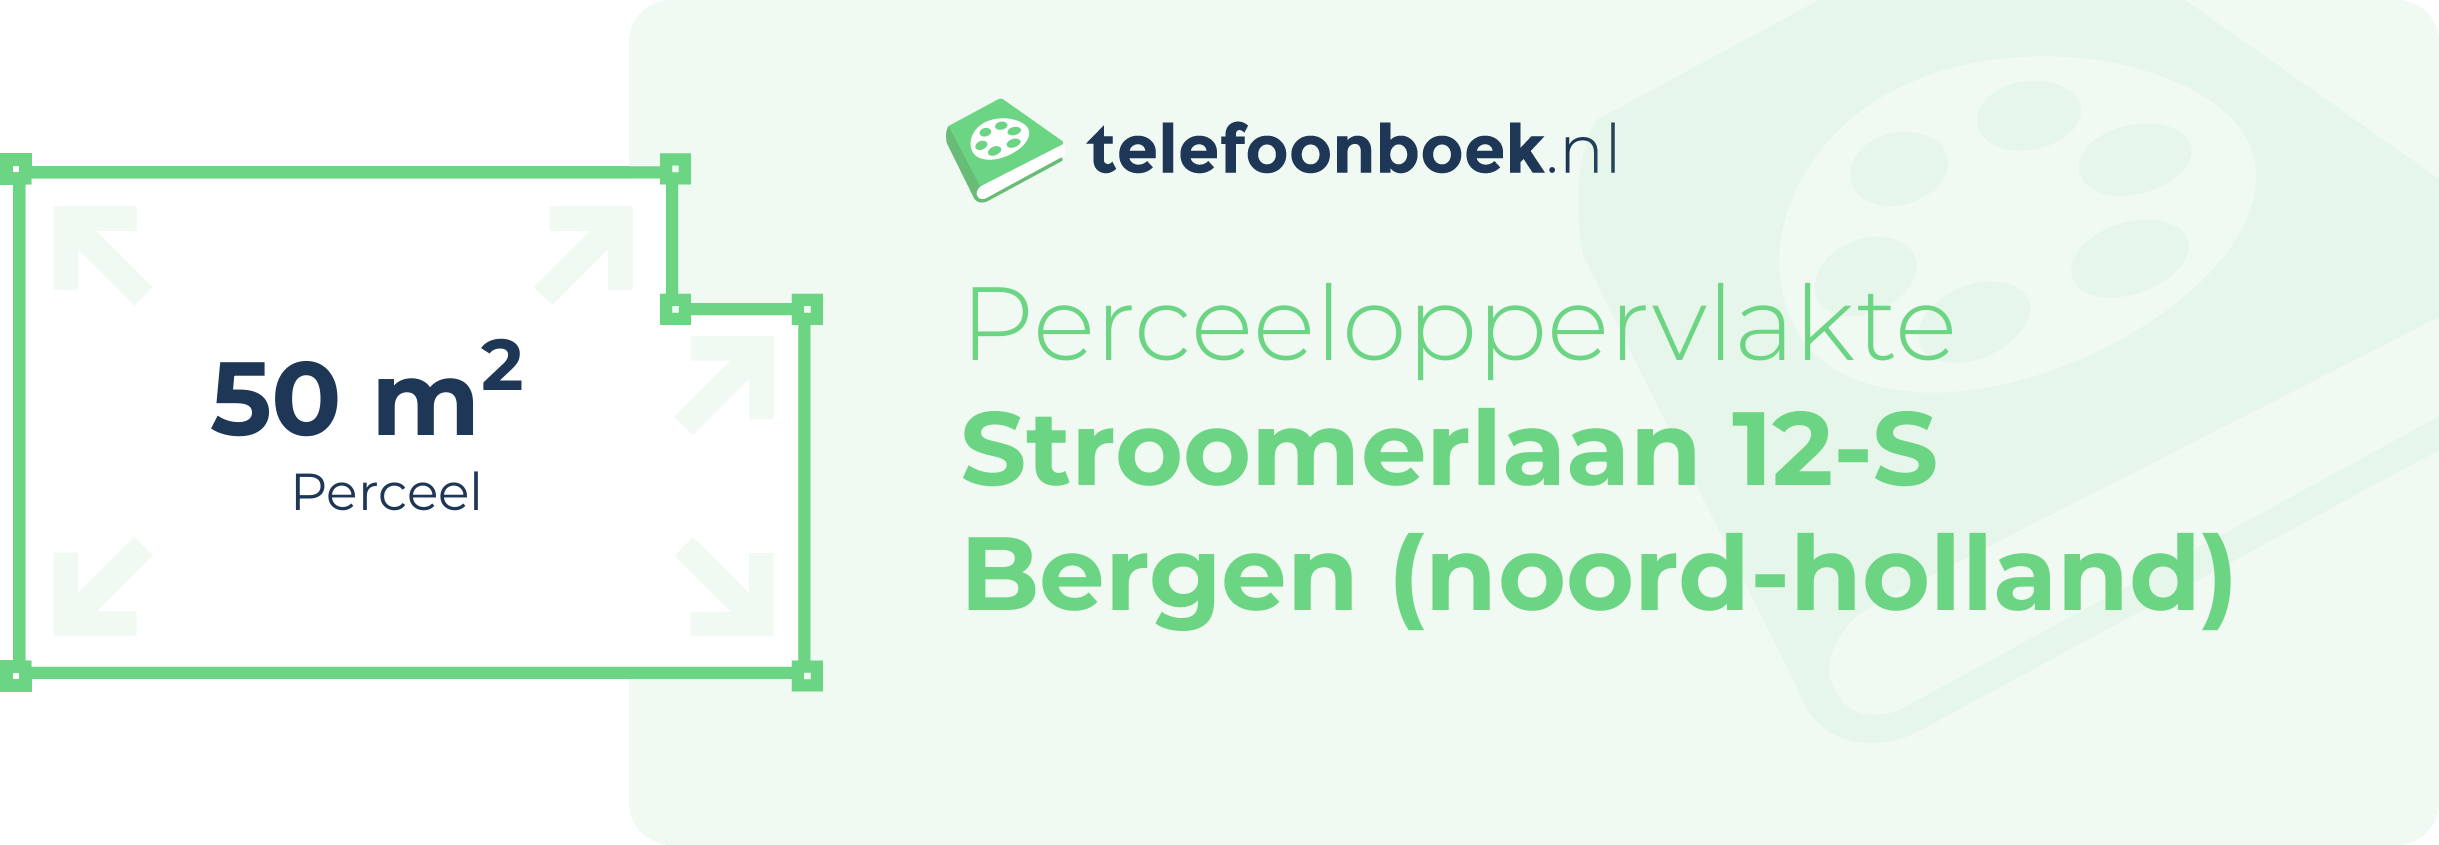 Perceeloppervlakte Stroomerlaan 12-S Bergen (Noord-Holland)